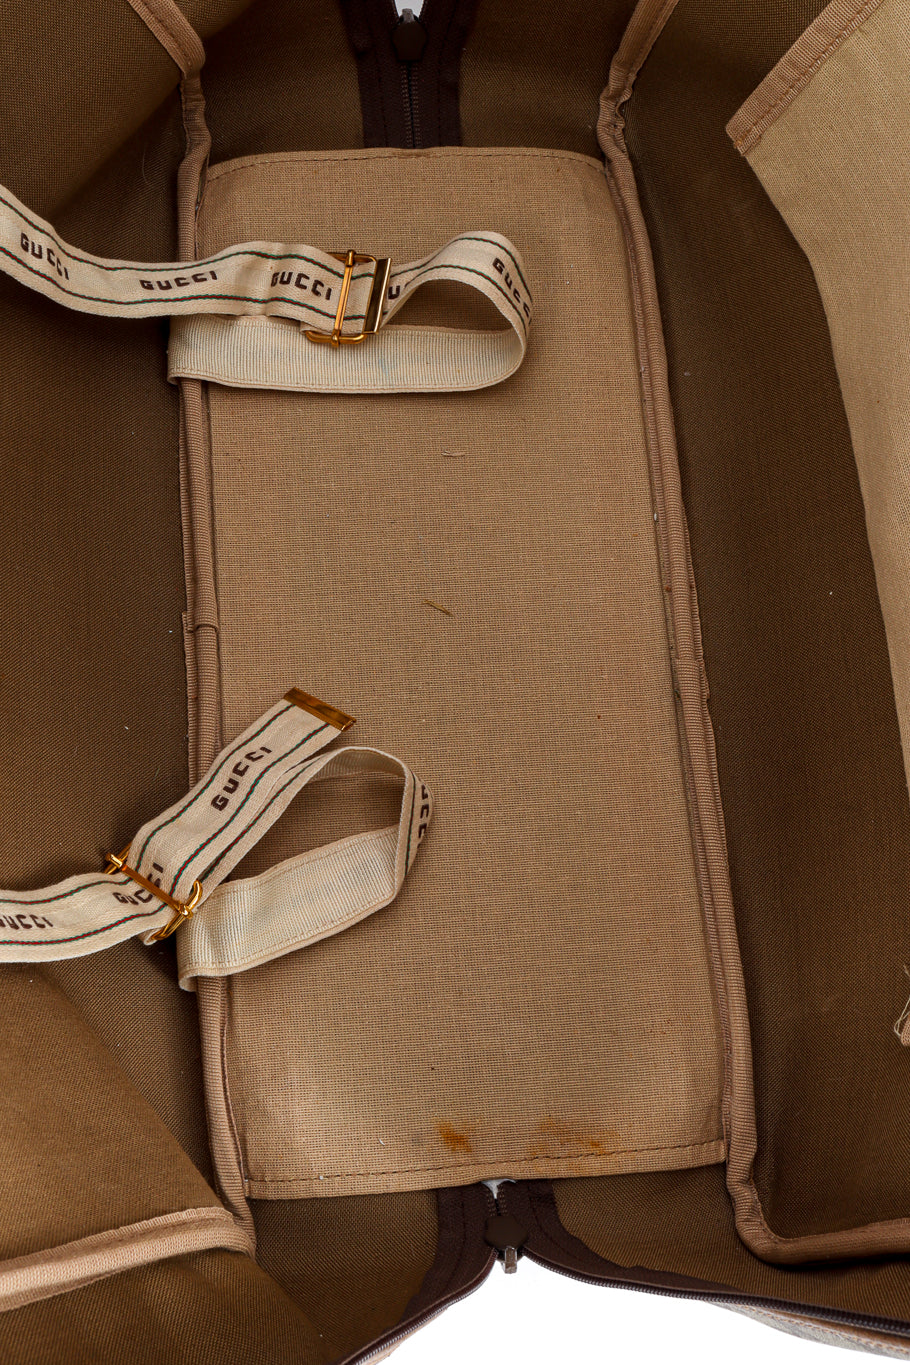 Vintage Gucci Monogram Suitcase interior closeup @recess la